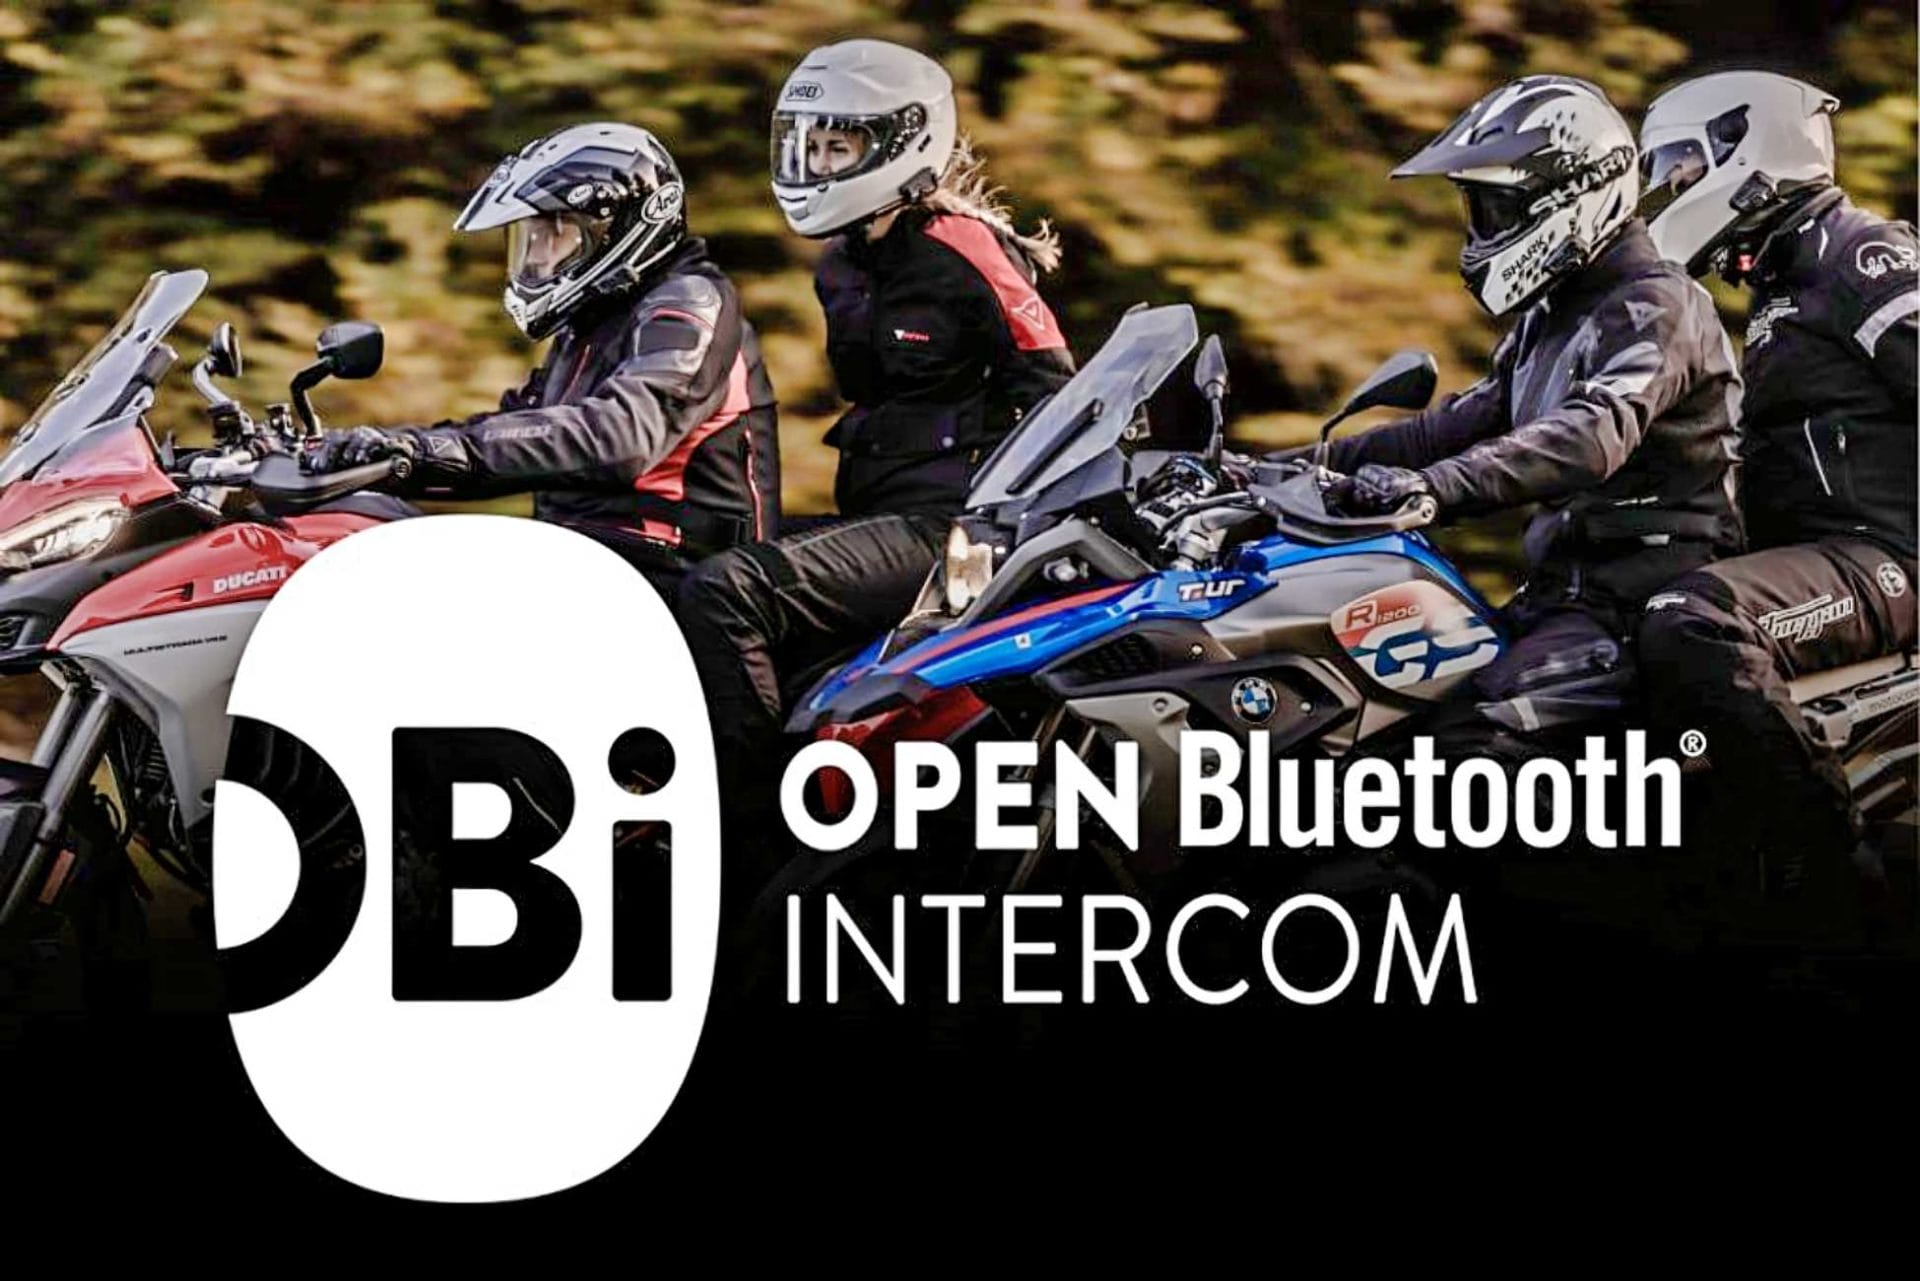 Neuer Standard für bessere Kommunikation auf dem Motorrad: OBI von Cardo Systems